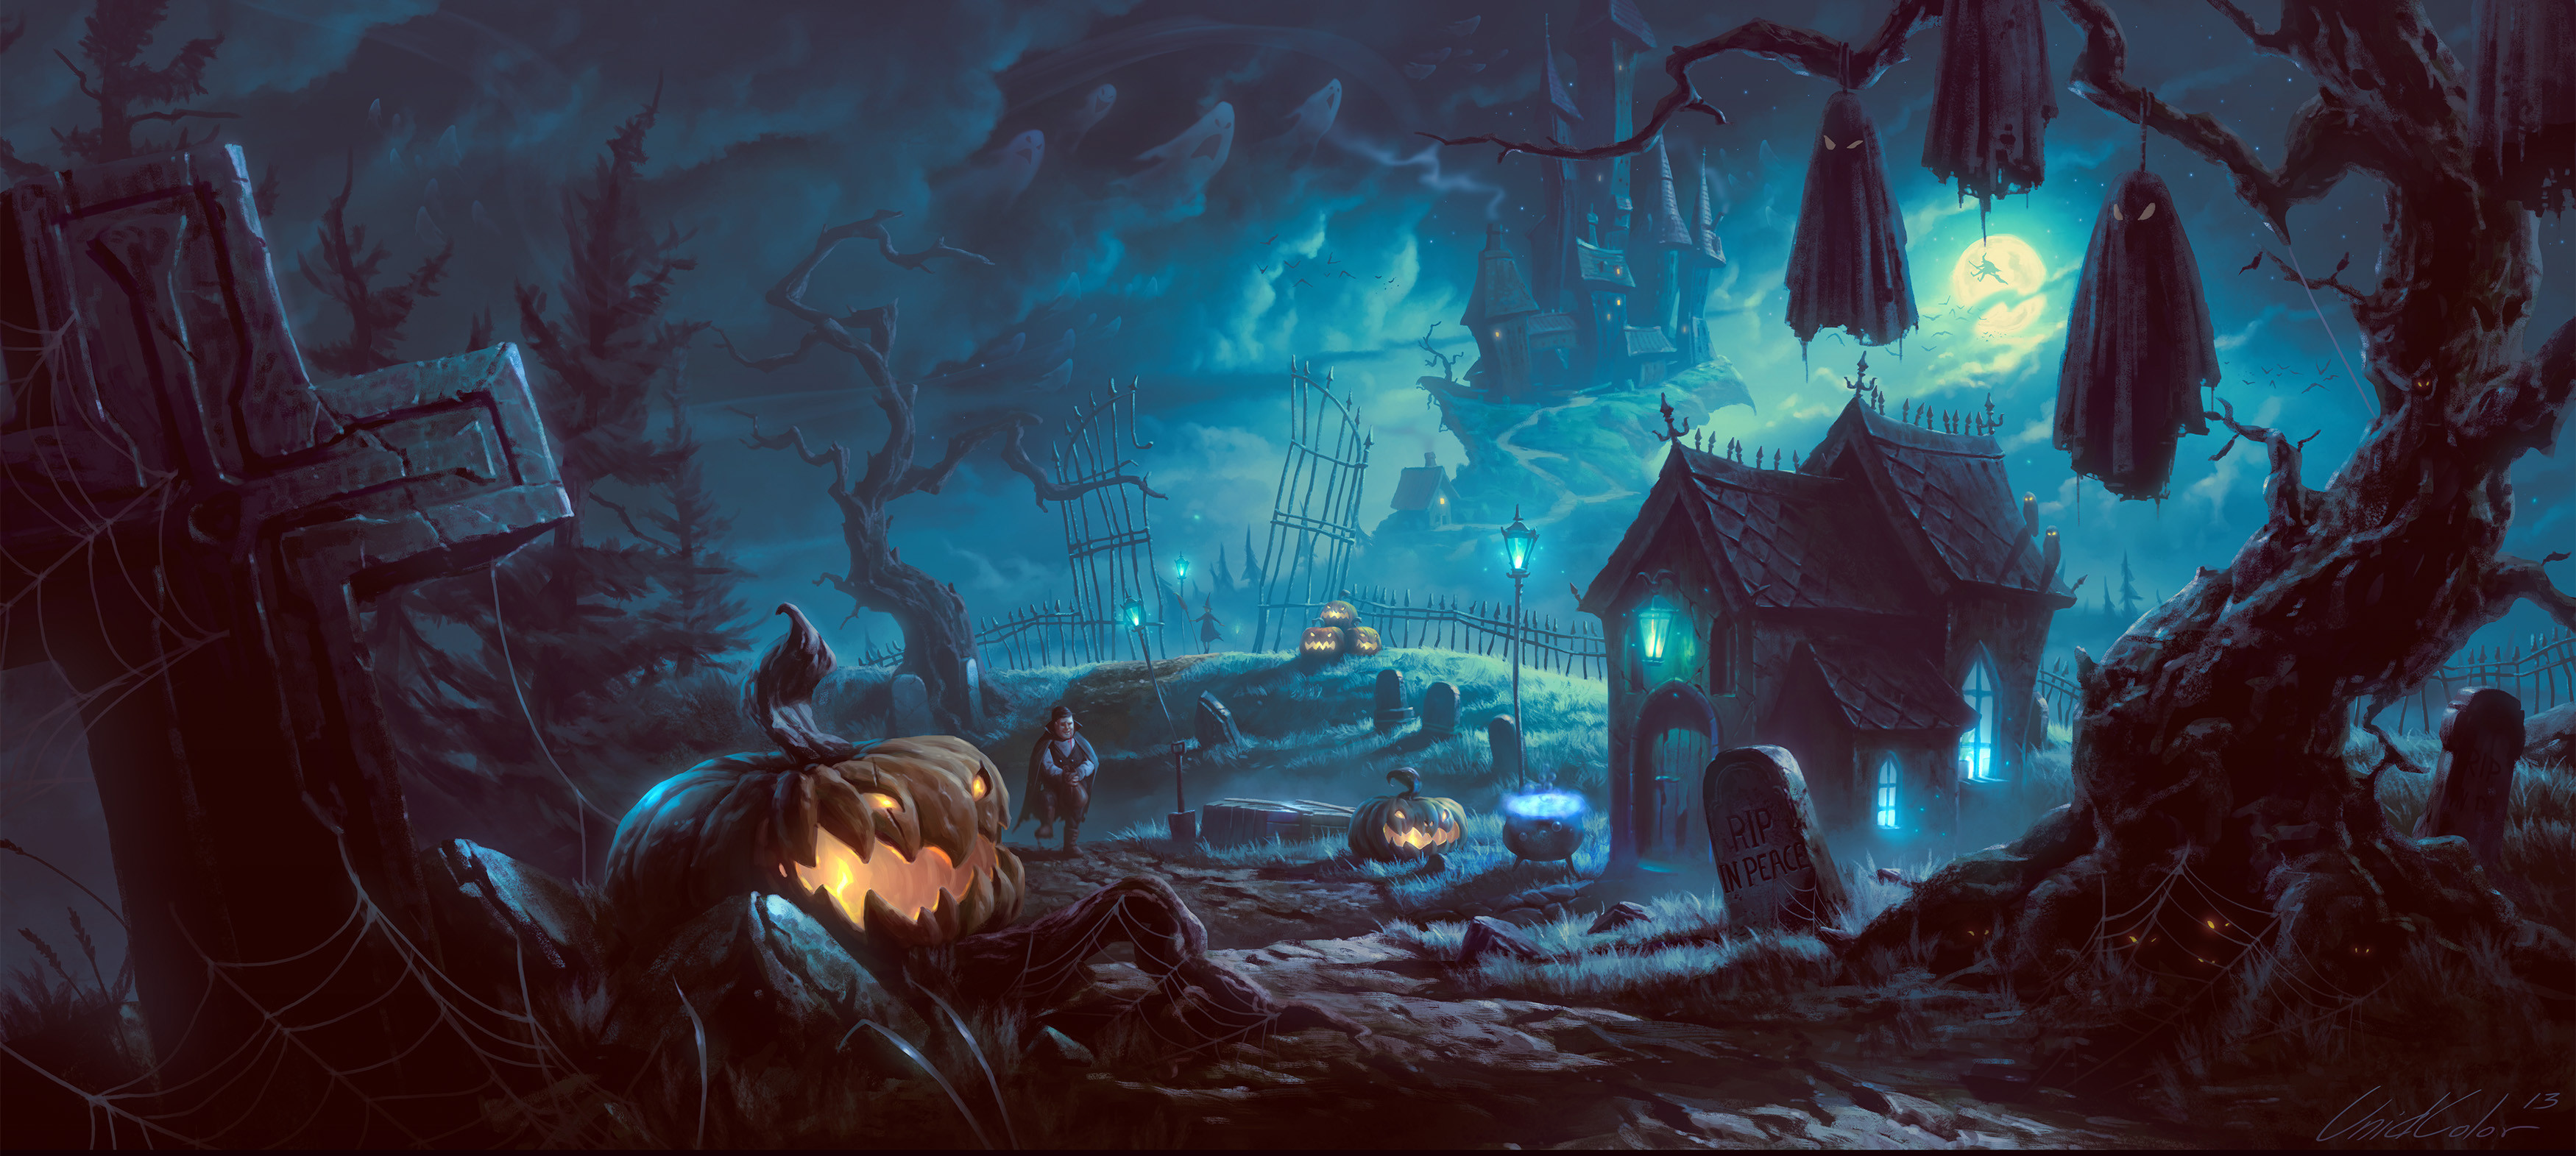 3500x1571 Scary Halloween Desktop Wallpapers - Wallpaper Cave creepy halloween  backgrounds ...